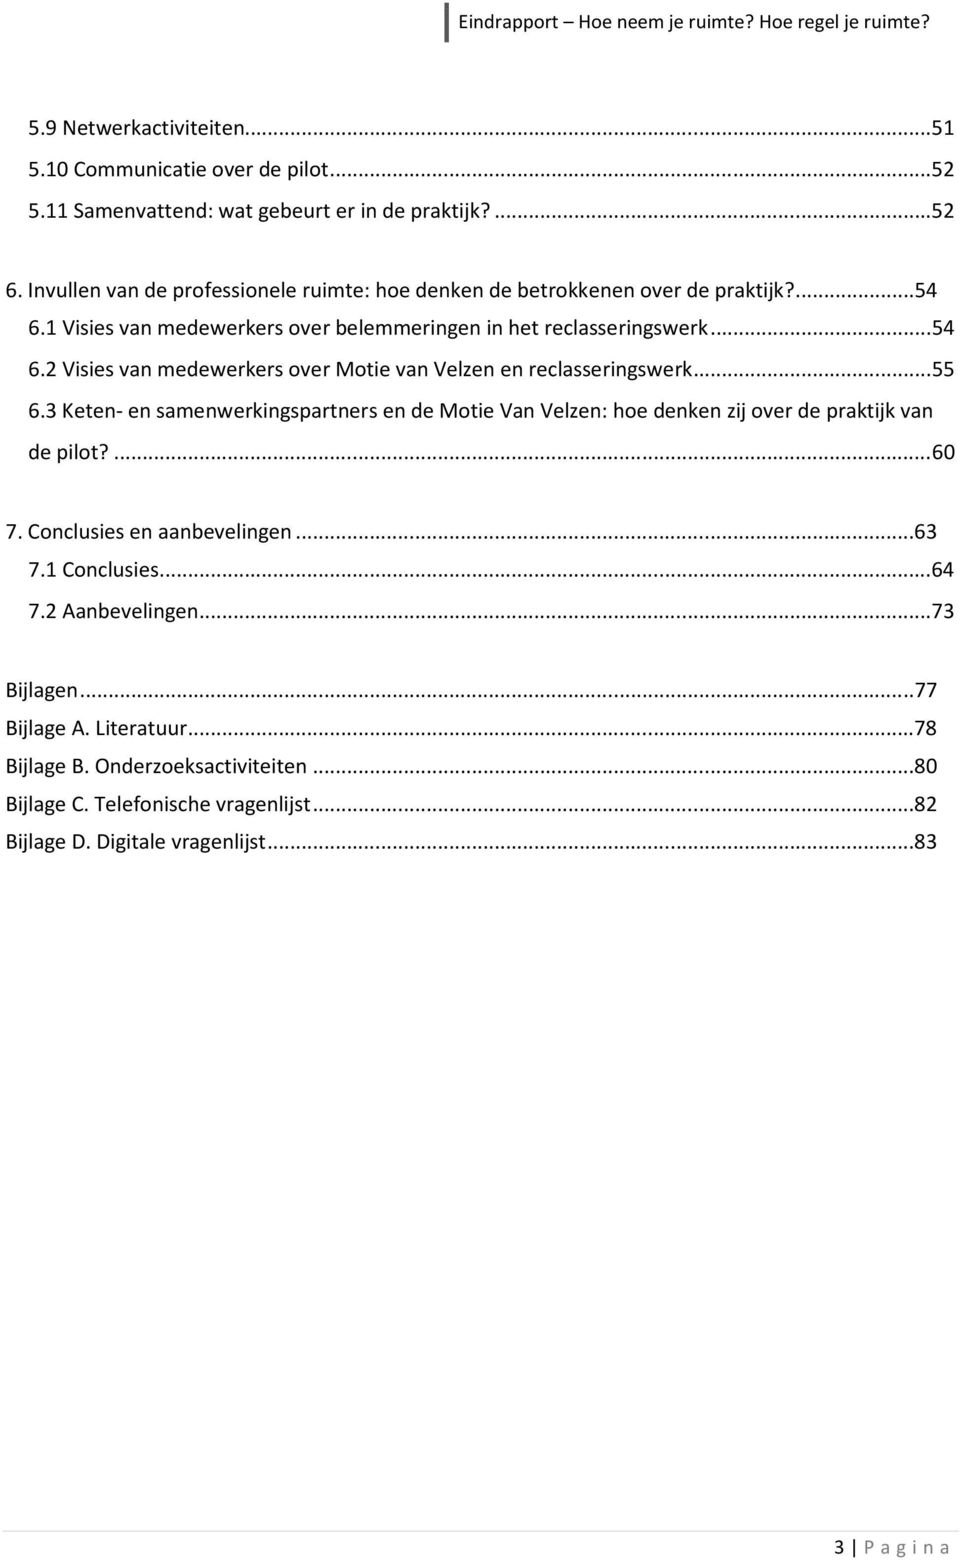 ..55 6.3 Keten- en samenwerkingspartners en de Motie Van Velzen: hoe denken zij over de praktijk van de pilot?...60 7. Conclusies en aanbevelingen...63 7.1 Conclusies...64 7.